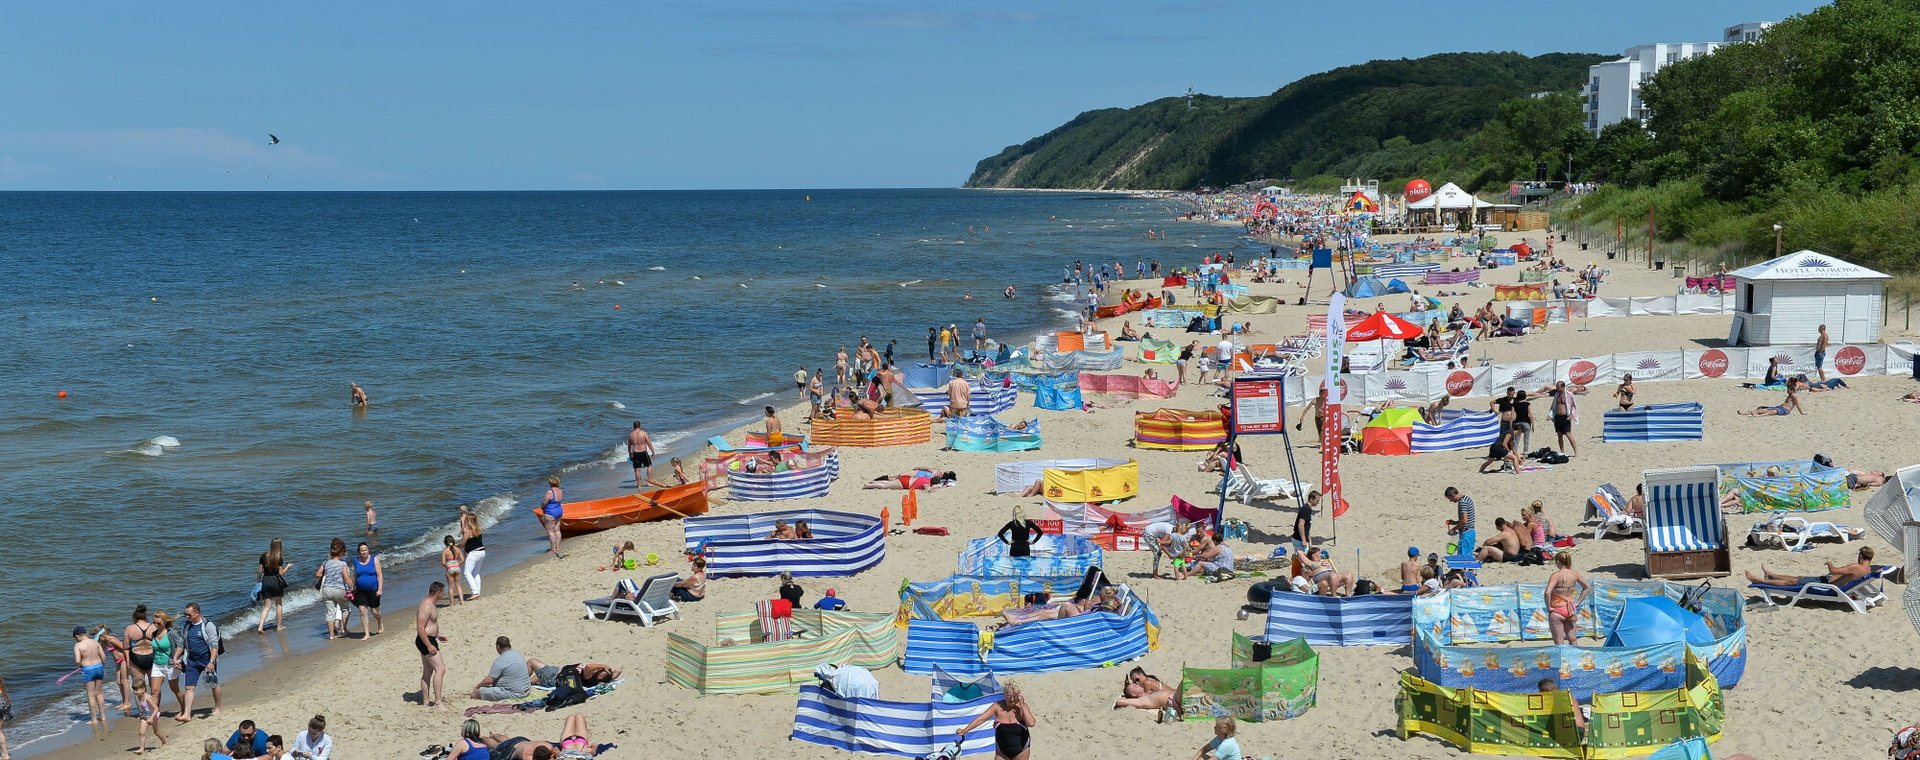 Niemieccy turyści chętnie przyjeżdżają na wakacje nad polskie morze. 